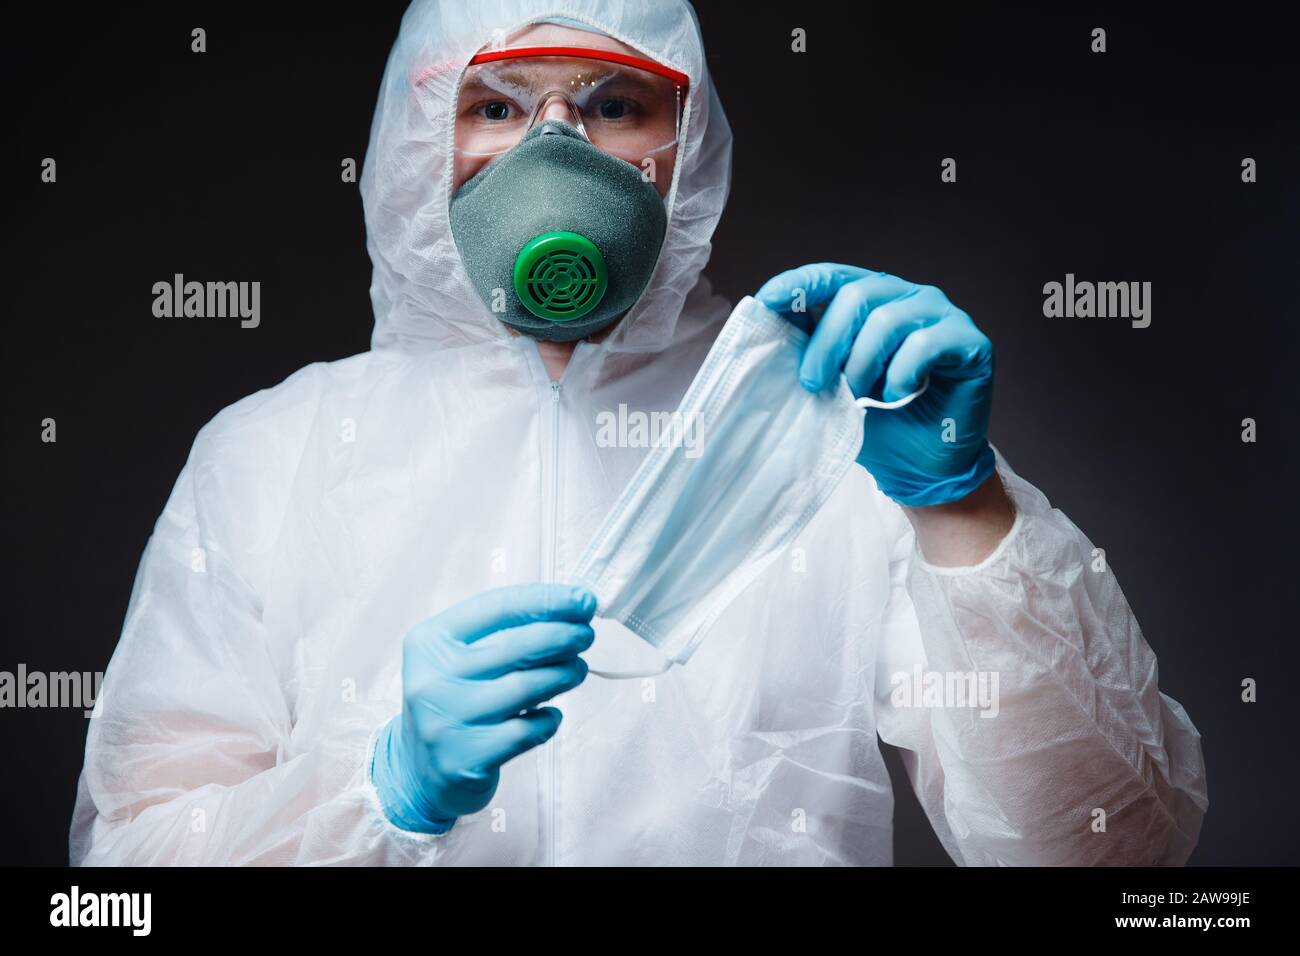 Medic man in white hazmat protective holding gauze bandage mask for ...